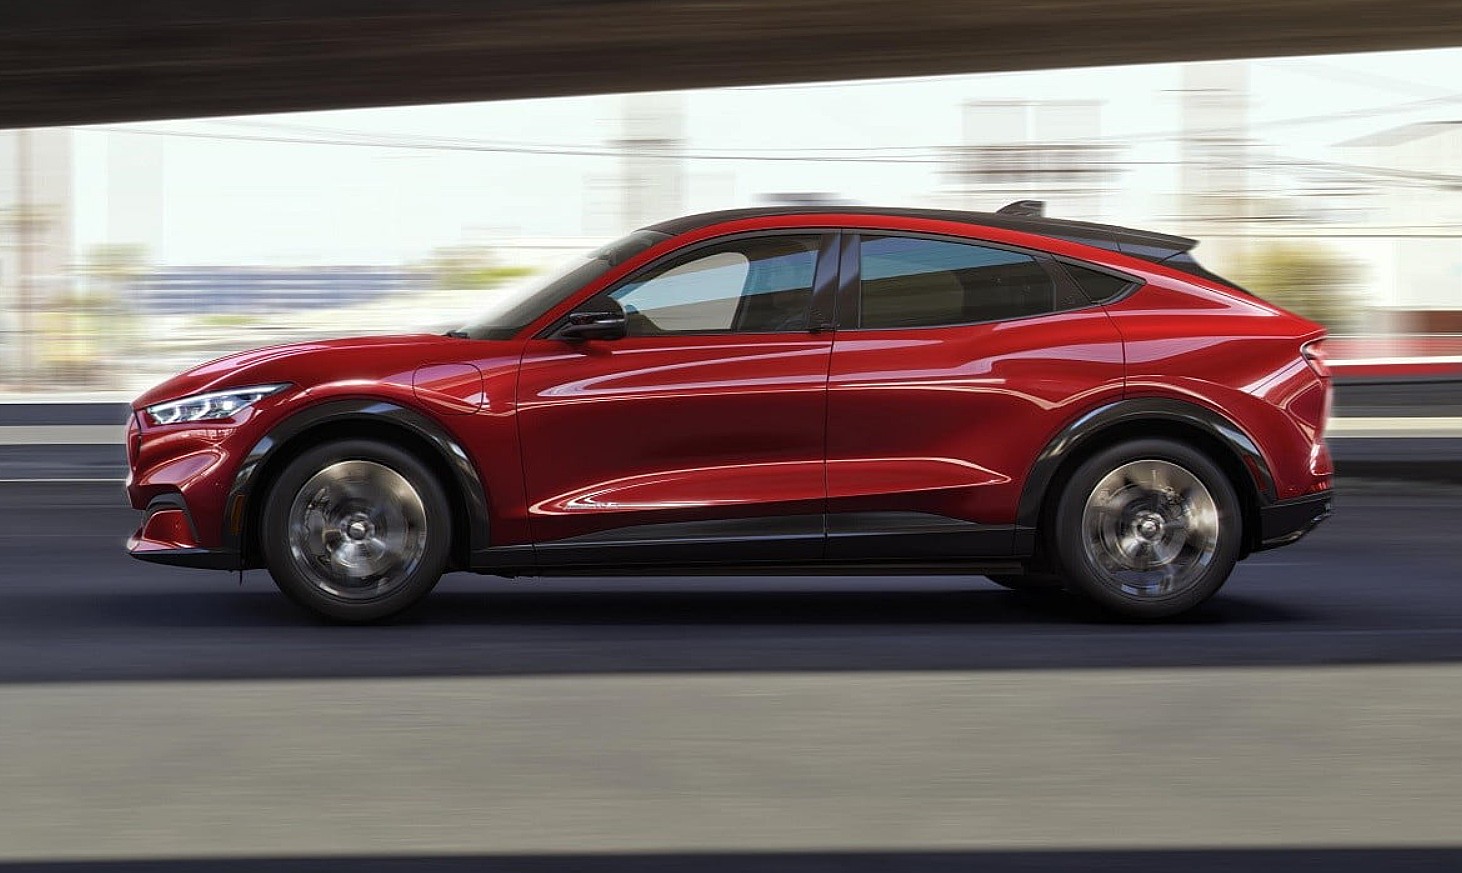 Ford Mustang Mach-E mogao bi biti električno vozilo broj 2022 po prodaji u XNUMX